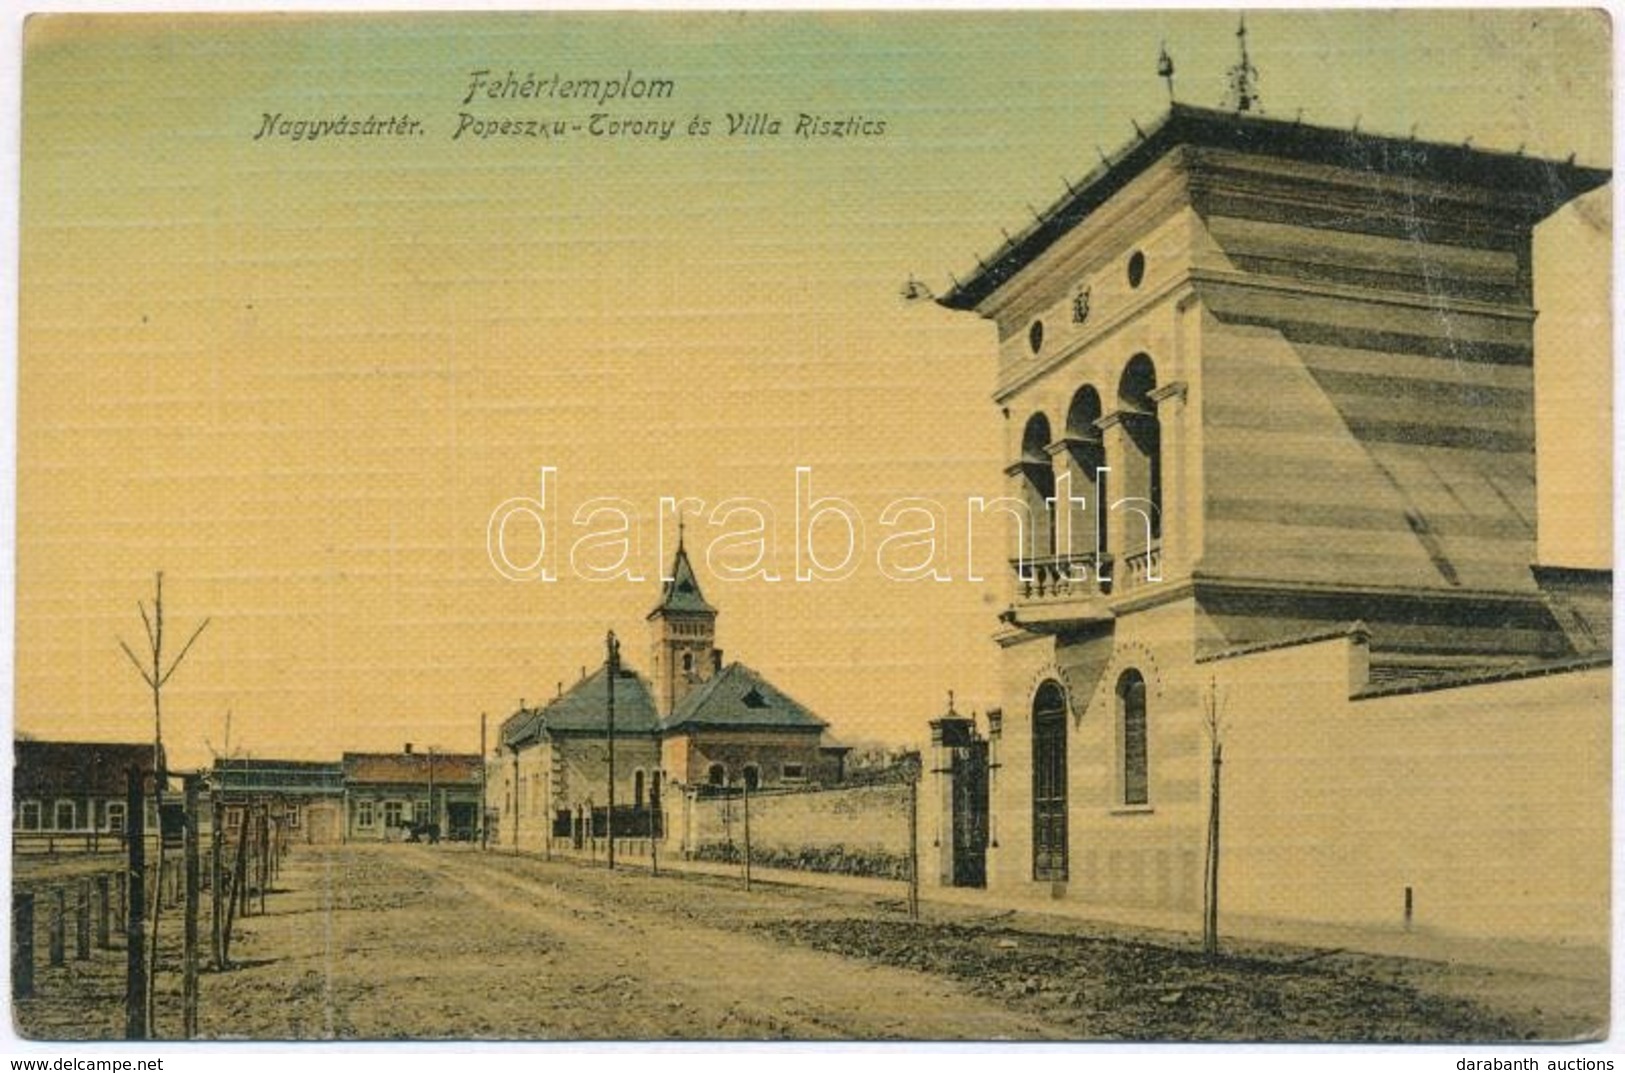 T3 1909 Fehértemplom, Ung. Weisskirchen, Bela Crkva; Nagyvásártér, Popeszku Torony és Villa Risztics / Market Square, To - Non Classés